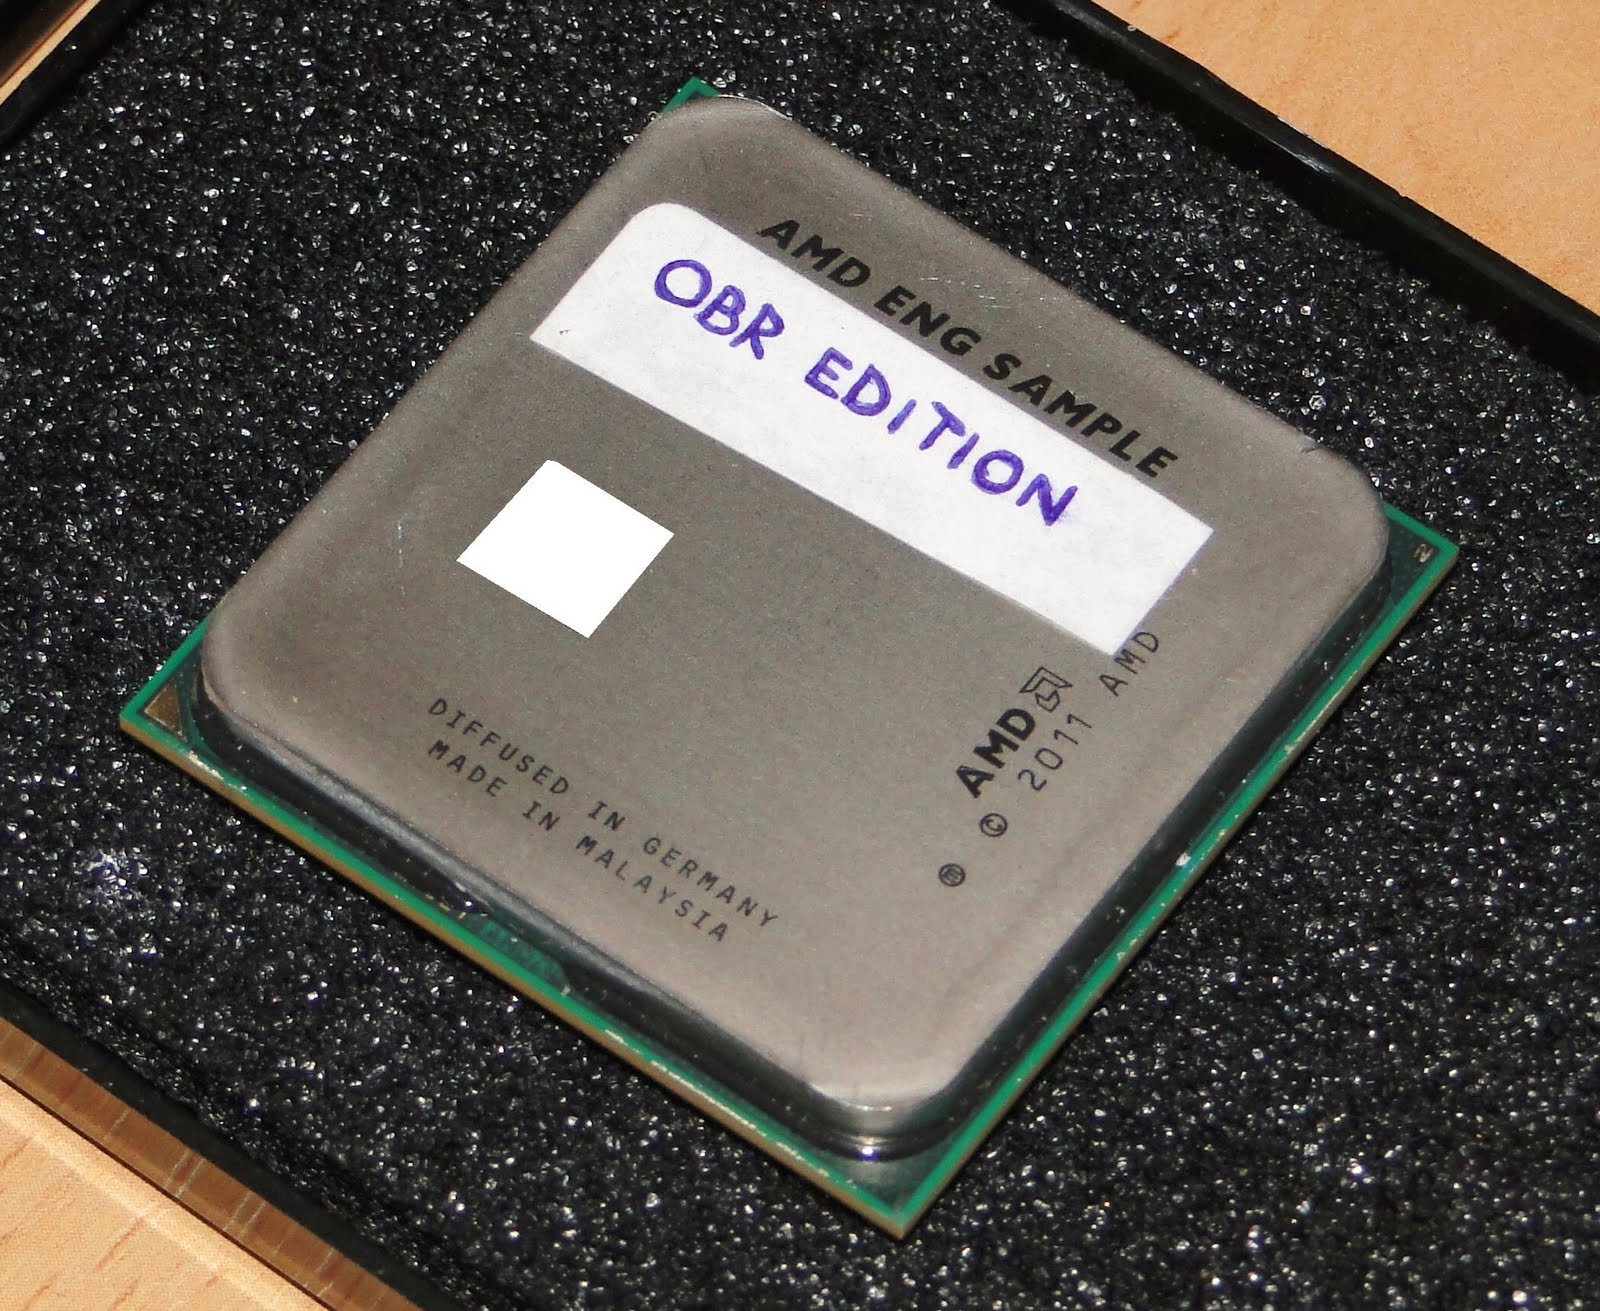 Immagine pubblicata in relazione al seguente contenuto: Foto e benchmark della cpu a 8 core Bulldozer di AMD | Nome immagine: news15282_7.jpg